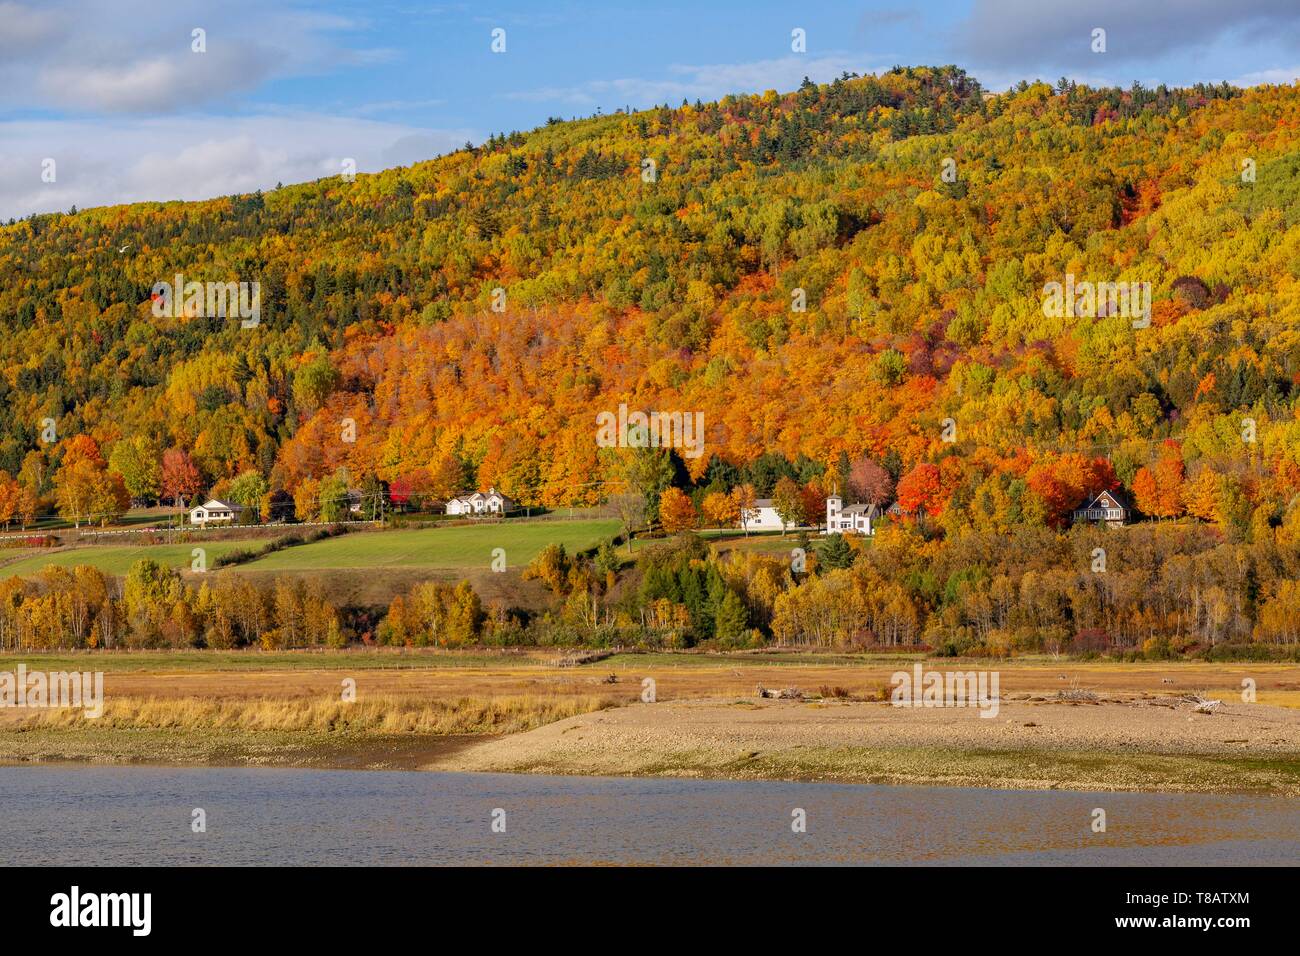 Kanada, Provinz Quebec, Charlevoix Region, Baie-Saint-Paul, der gouffre Fluss Nebenfluss des linken Ufer des St. Lawrence River, die schöne Häuser auf dem Hügel Stockfoto